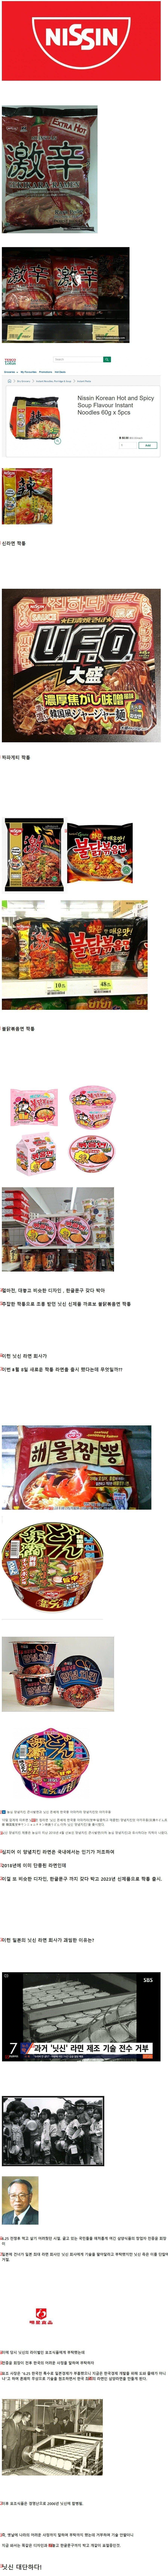 한국 라면 대놓고 베끼는 일본 라면 업체